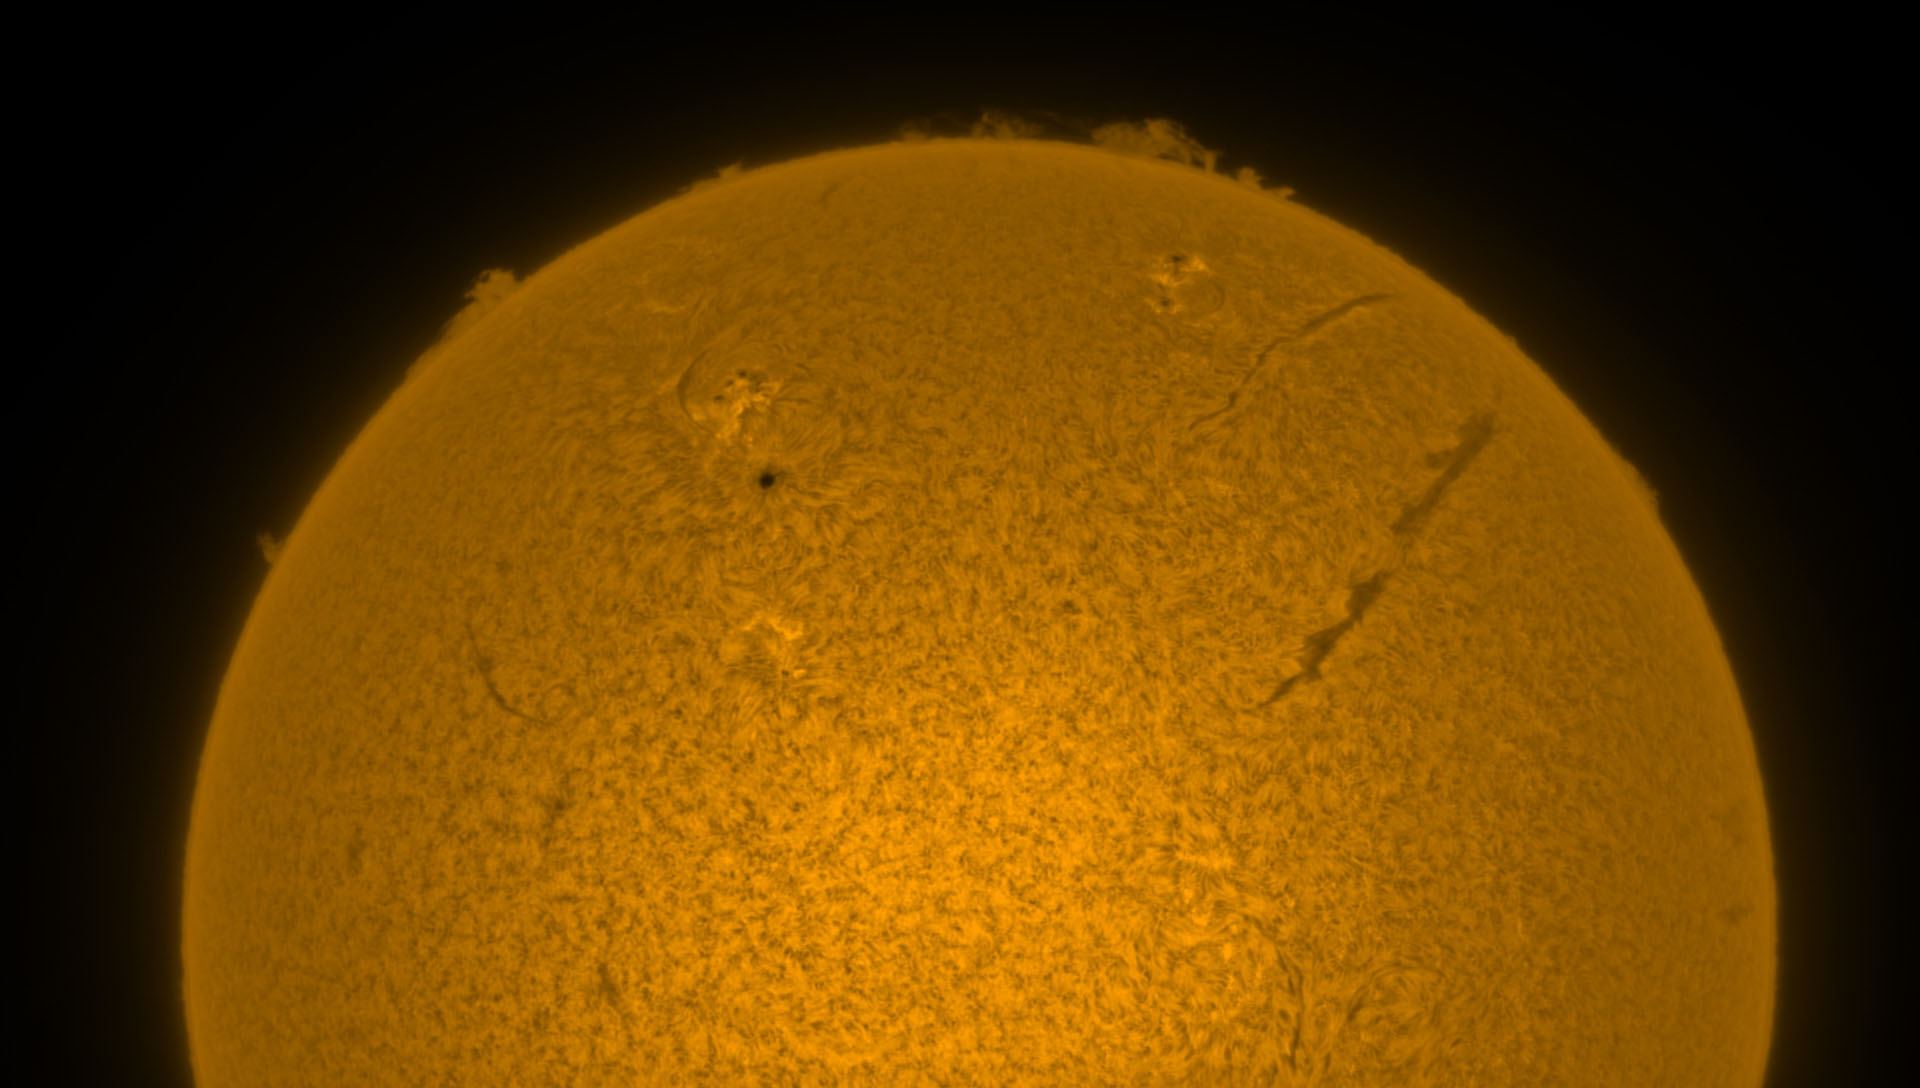 Sun on 8 July 2022 in Hα